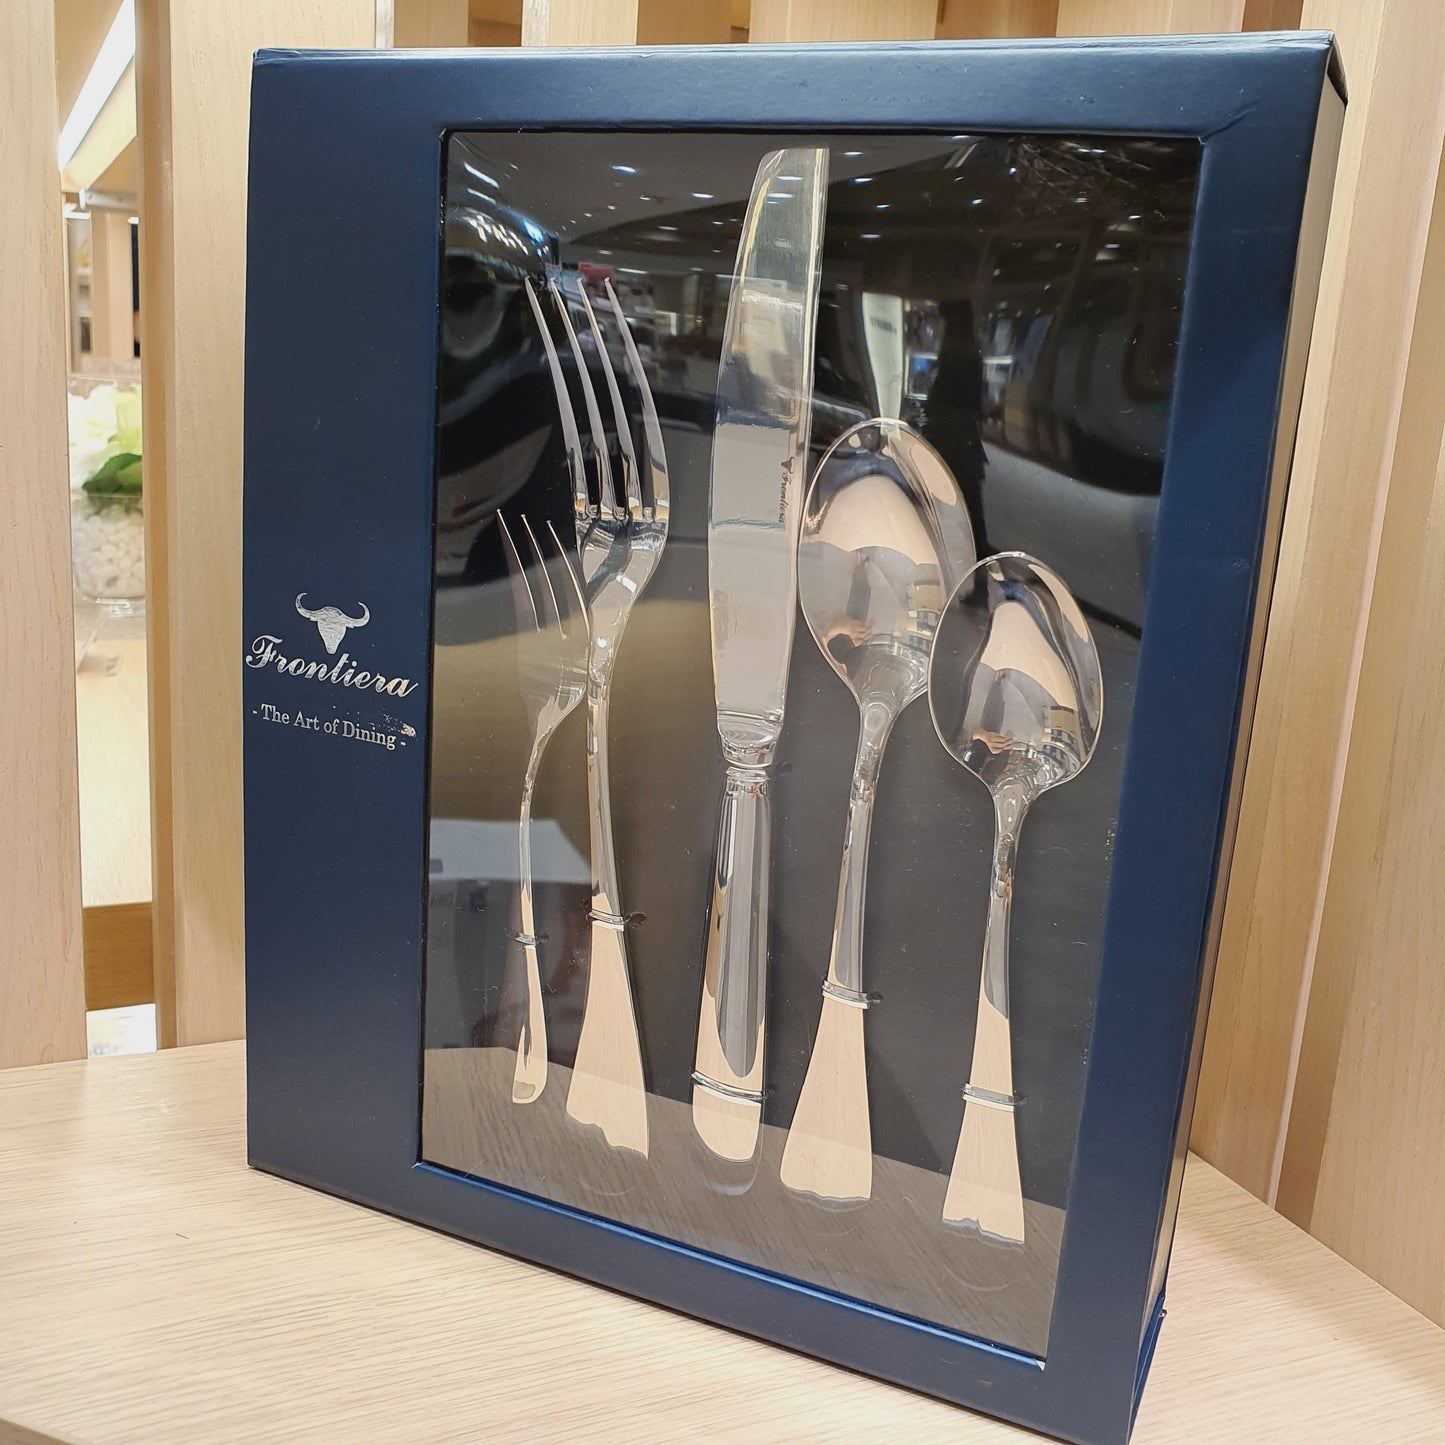 Frontiera Baguette 30Pcs, 6-Person Cutlery Set